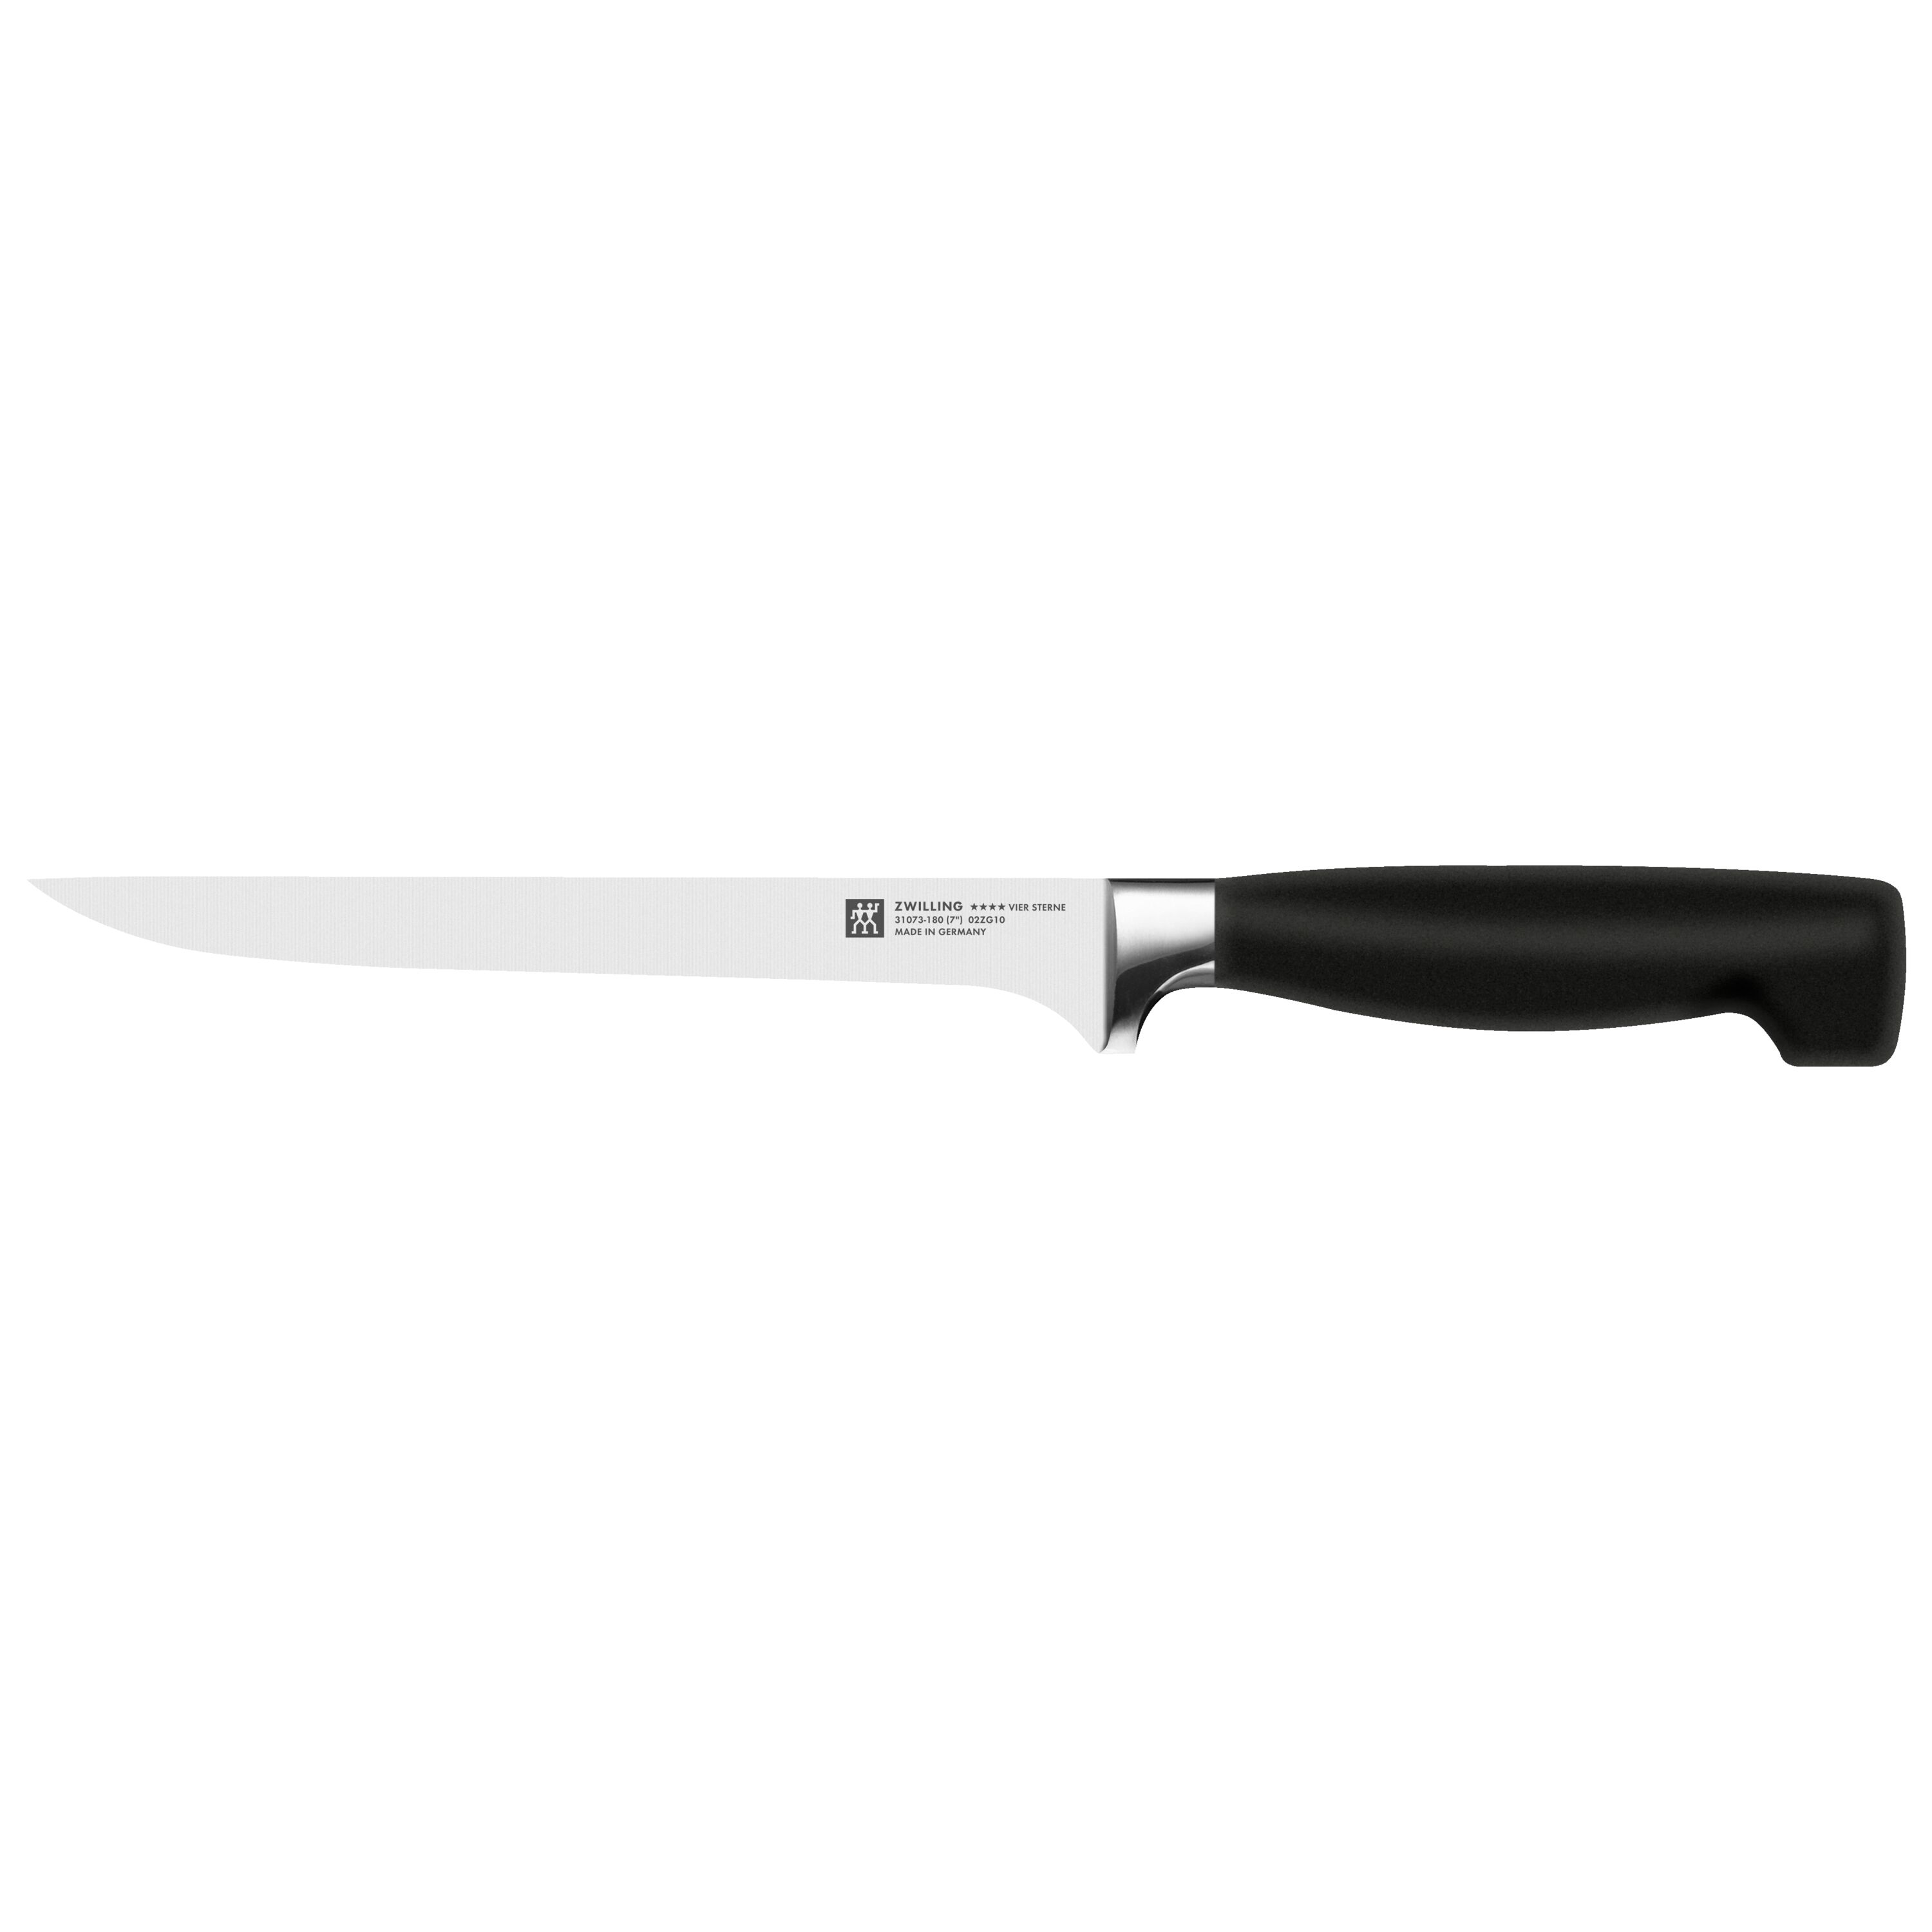 Best Made German Kitchen Fillet Knife